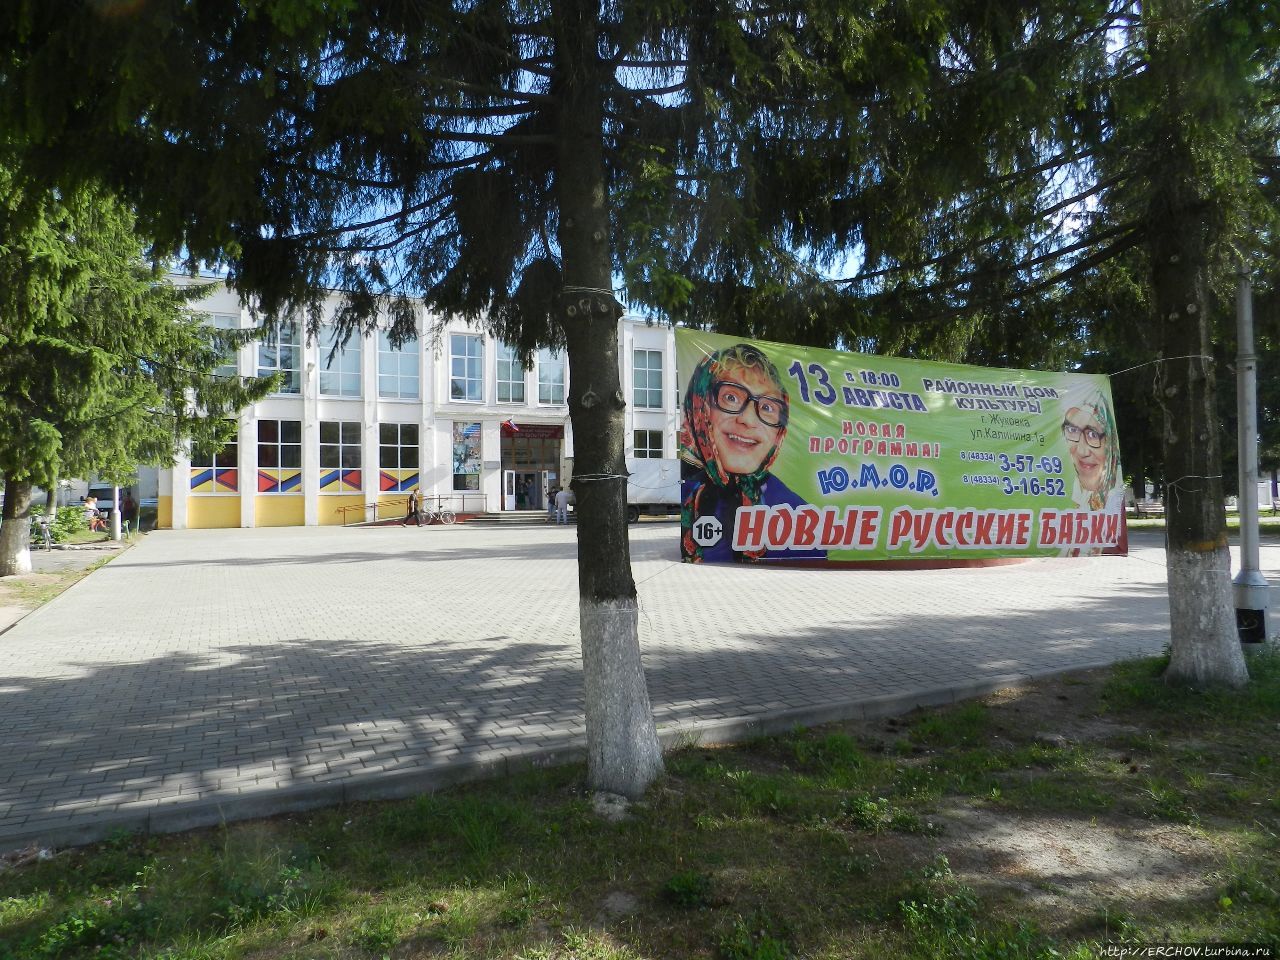 Жуковка (Районный центр Брянской области) Жуковка, Россия